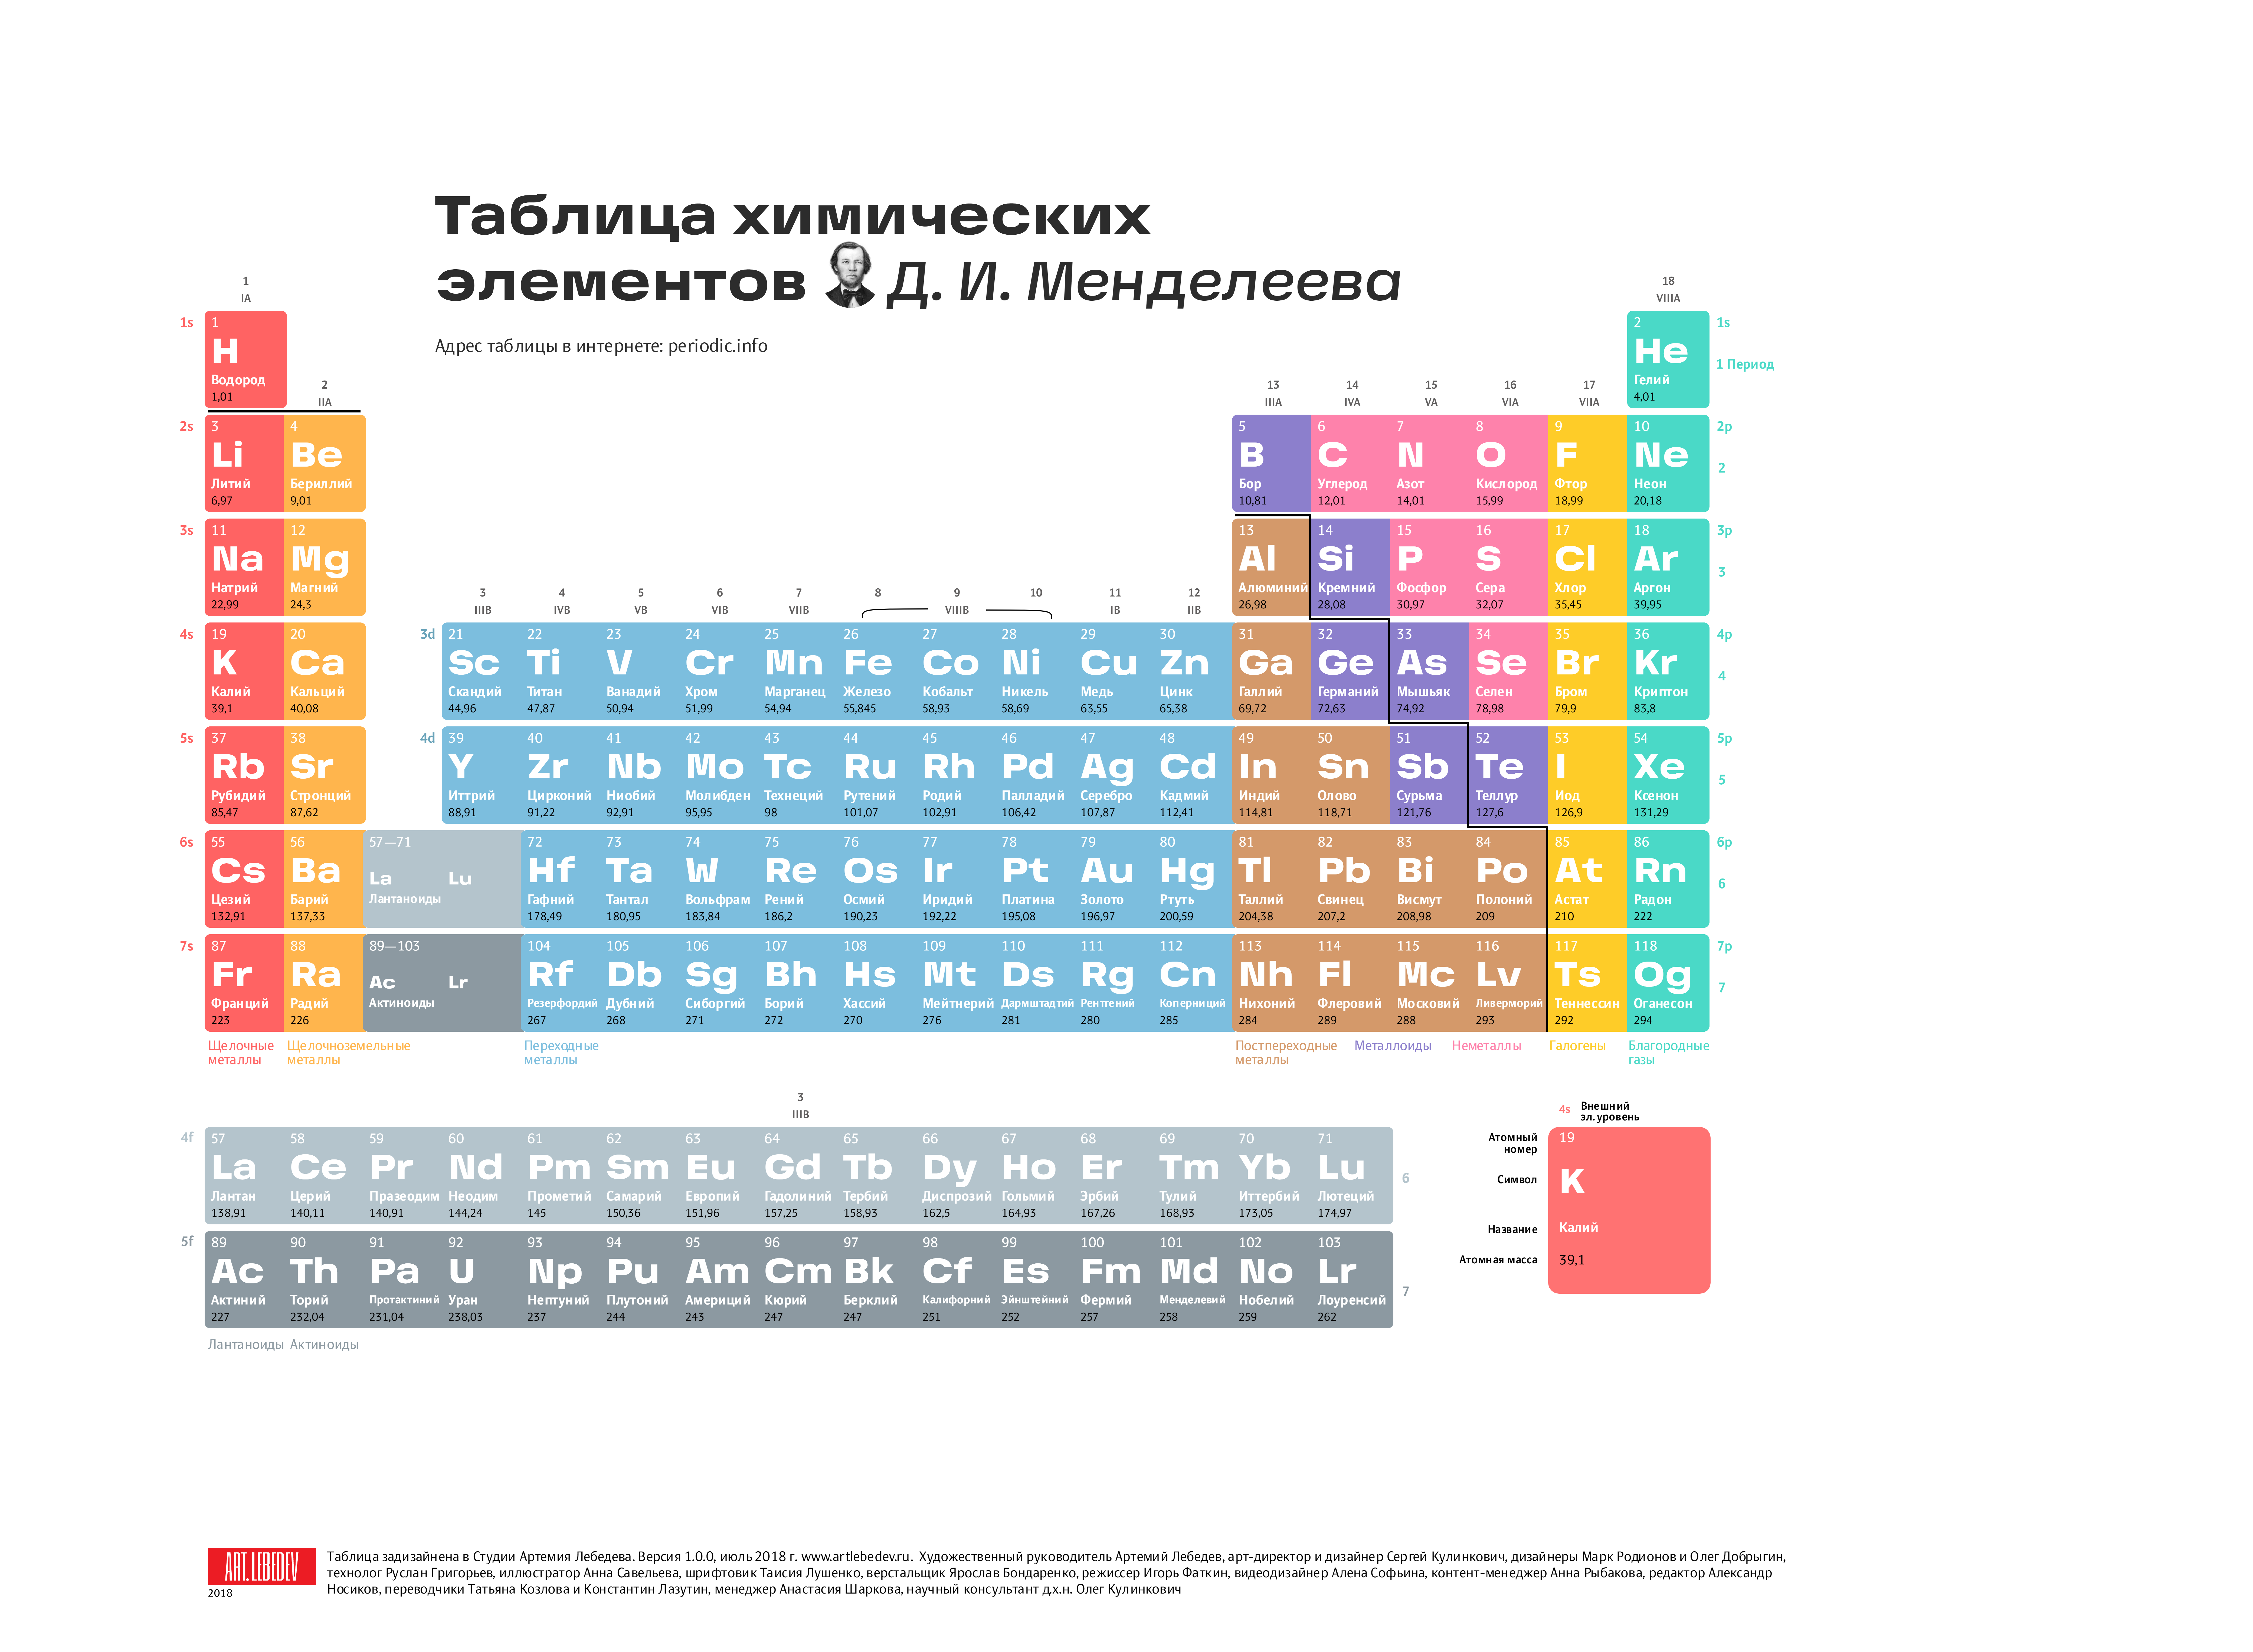 Элементы 10 группы. Современная таблица Менделеева 118 элементов. Первые 20 элементов таблицы Менделеева. Химия просто таблица Менделеева 2.0. Первые 18 элементов таблицы Менделеева.